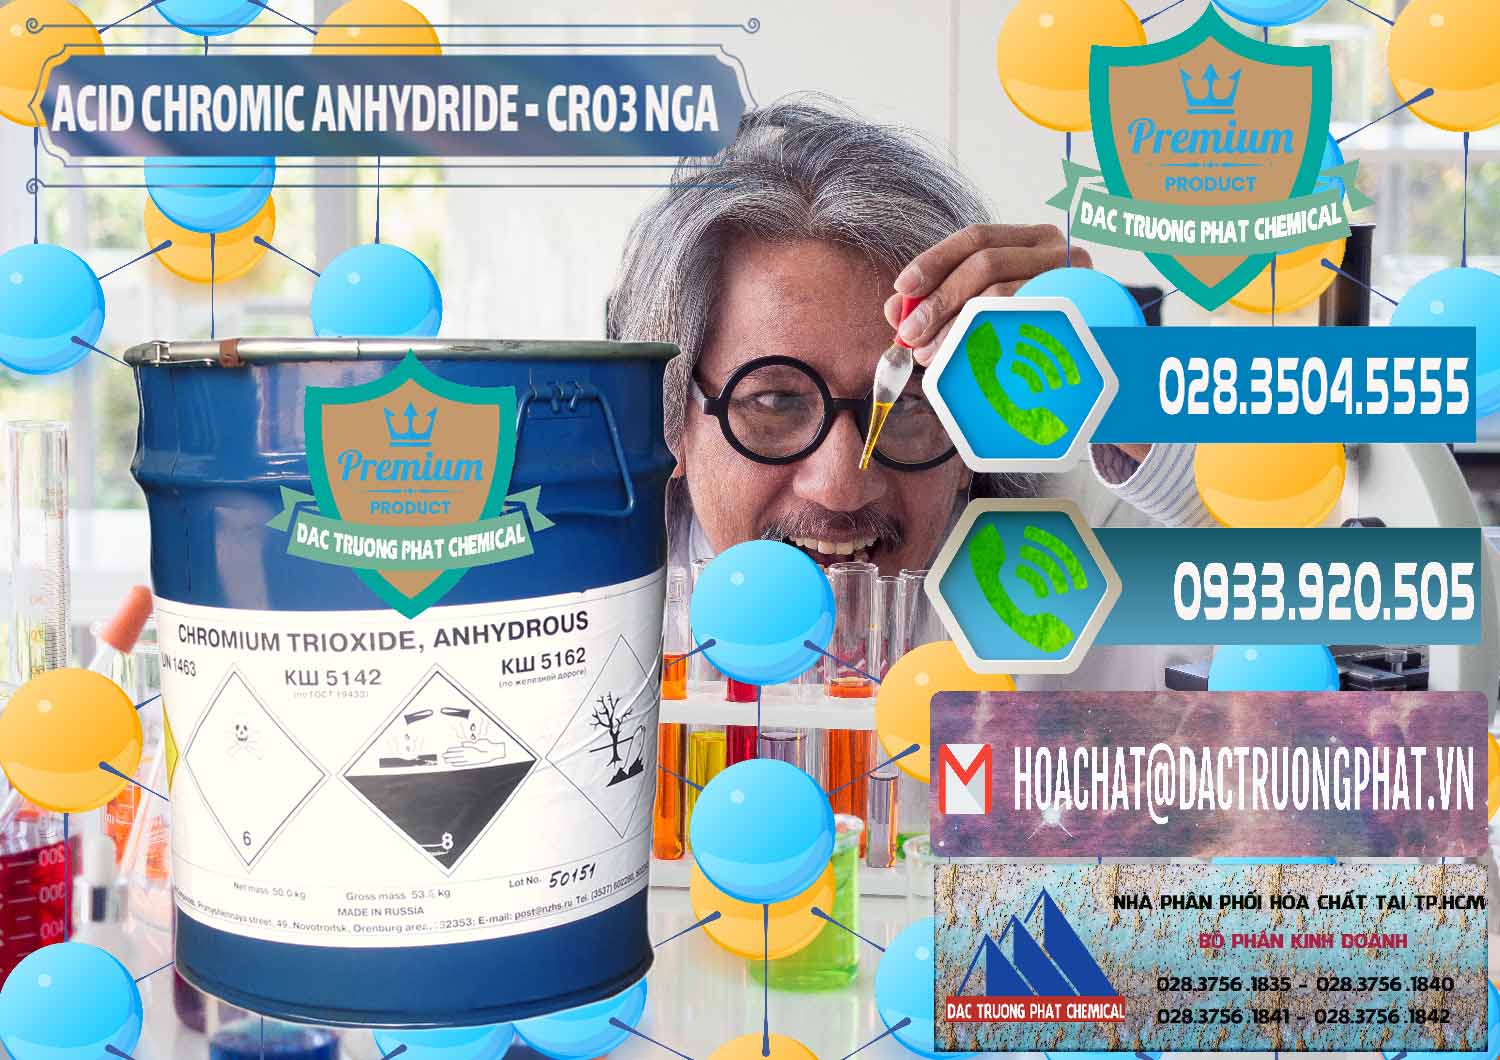 Nơi cung cấp ( bán ) Acid Chromic Anhydride - Cromic CRO3 Nga Russia - 0006 - Cty chuyên bán - cung cấp hóa chất tại TP.HCM - congtyhoachat.net